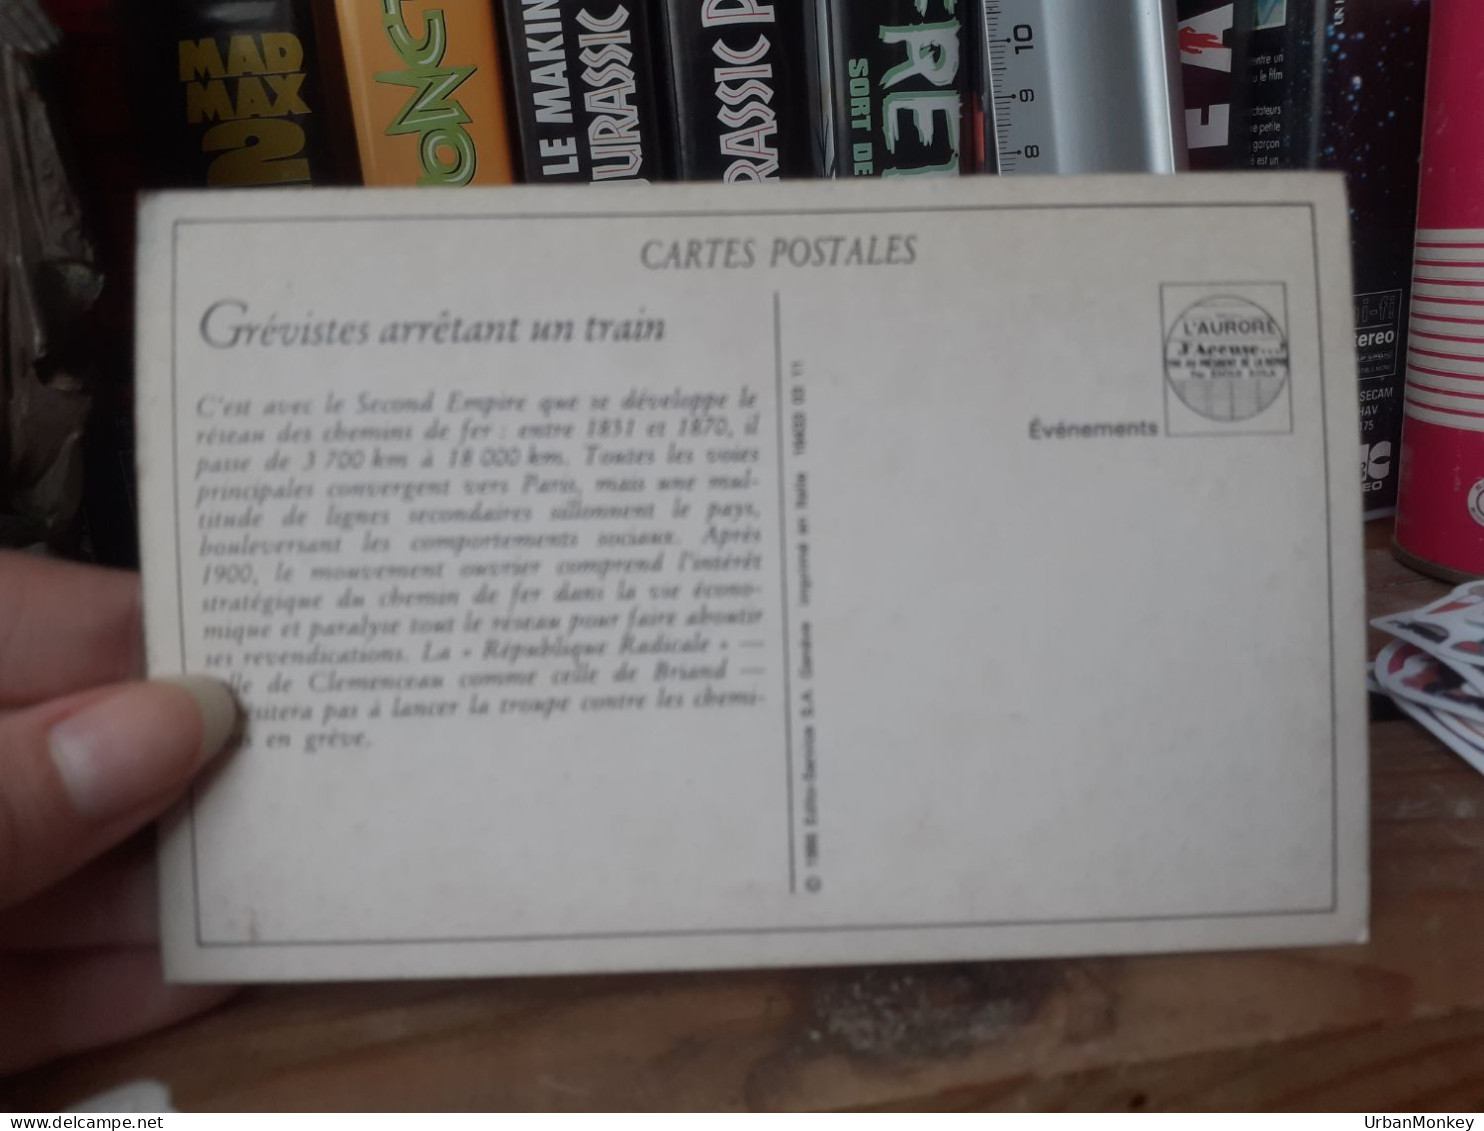 Carte Postale Grévistes - History